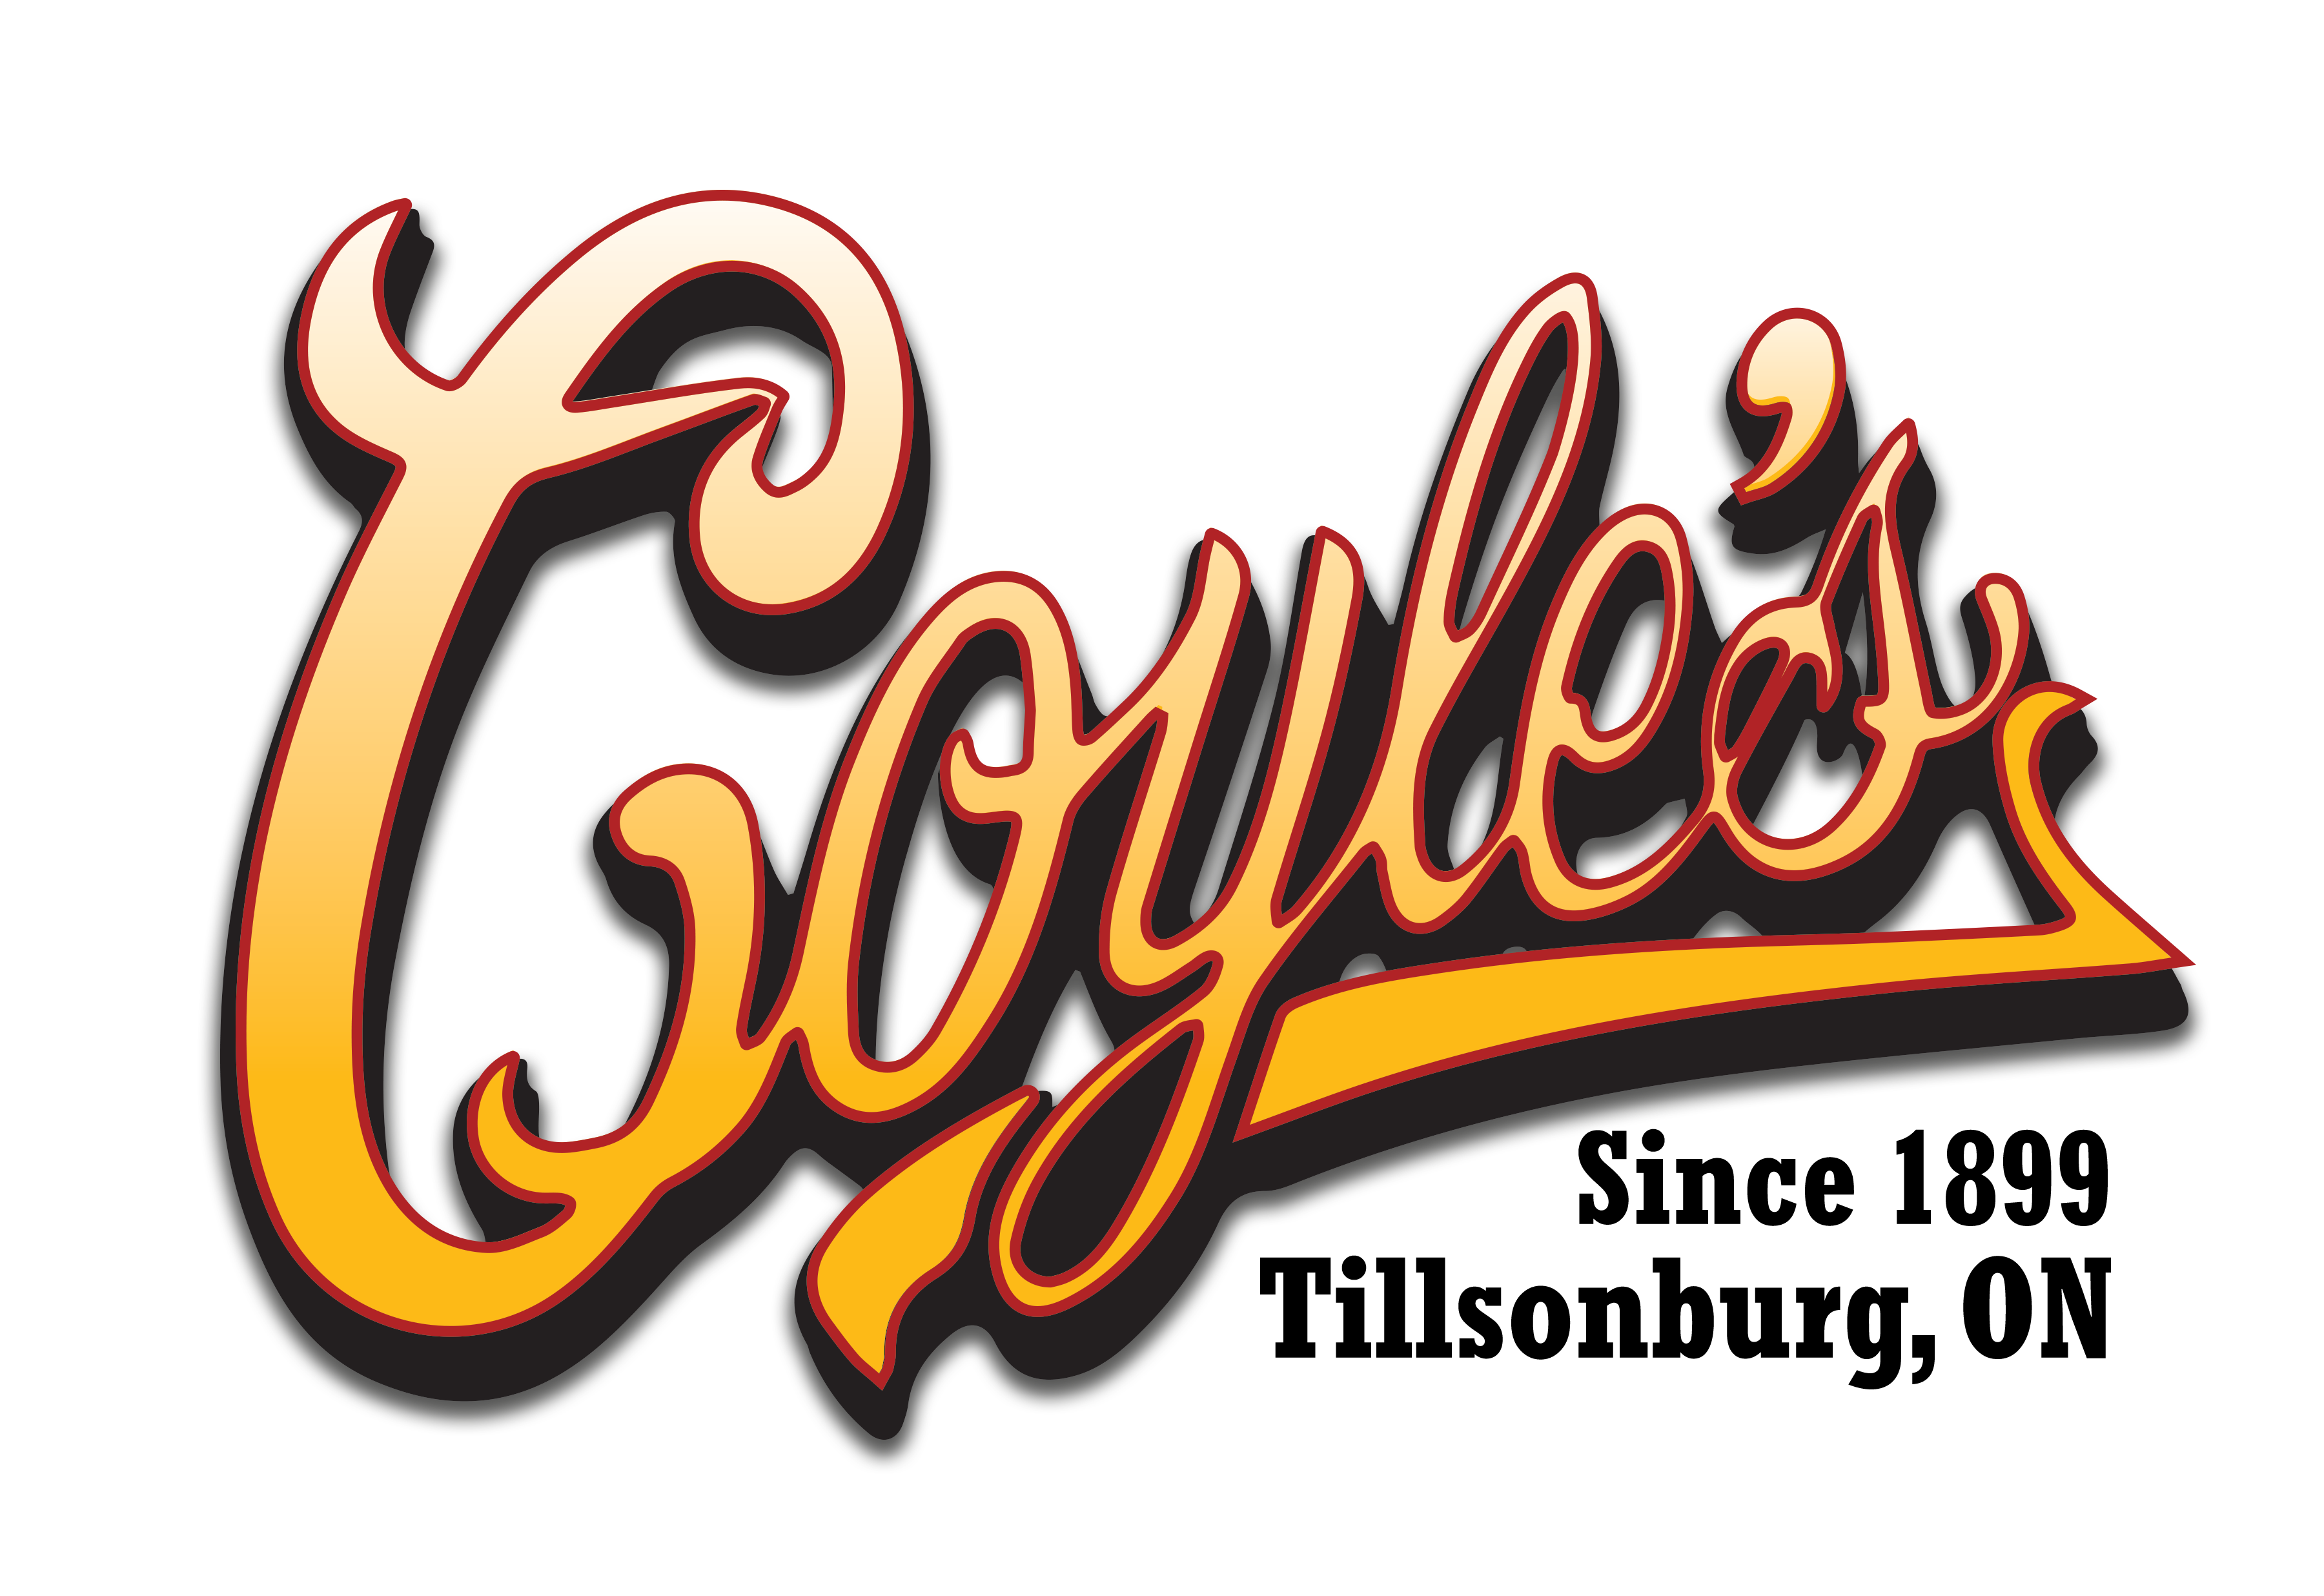 Coyle's